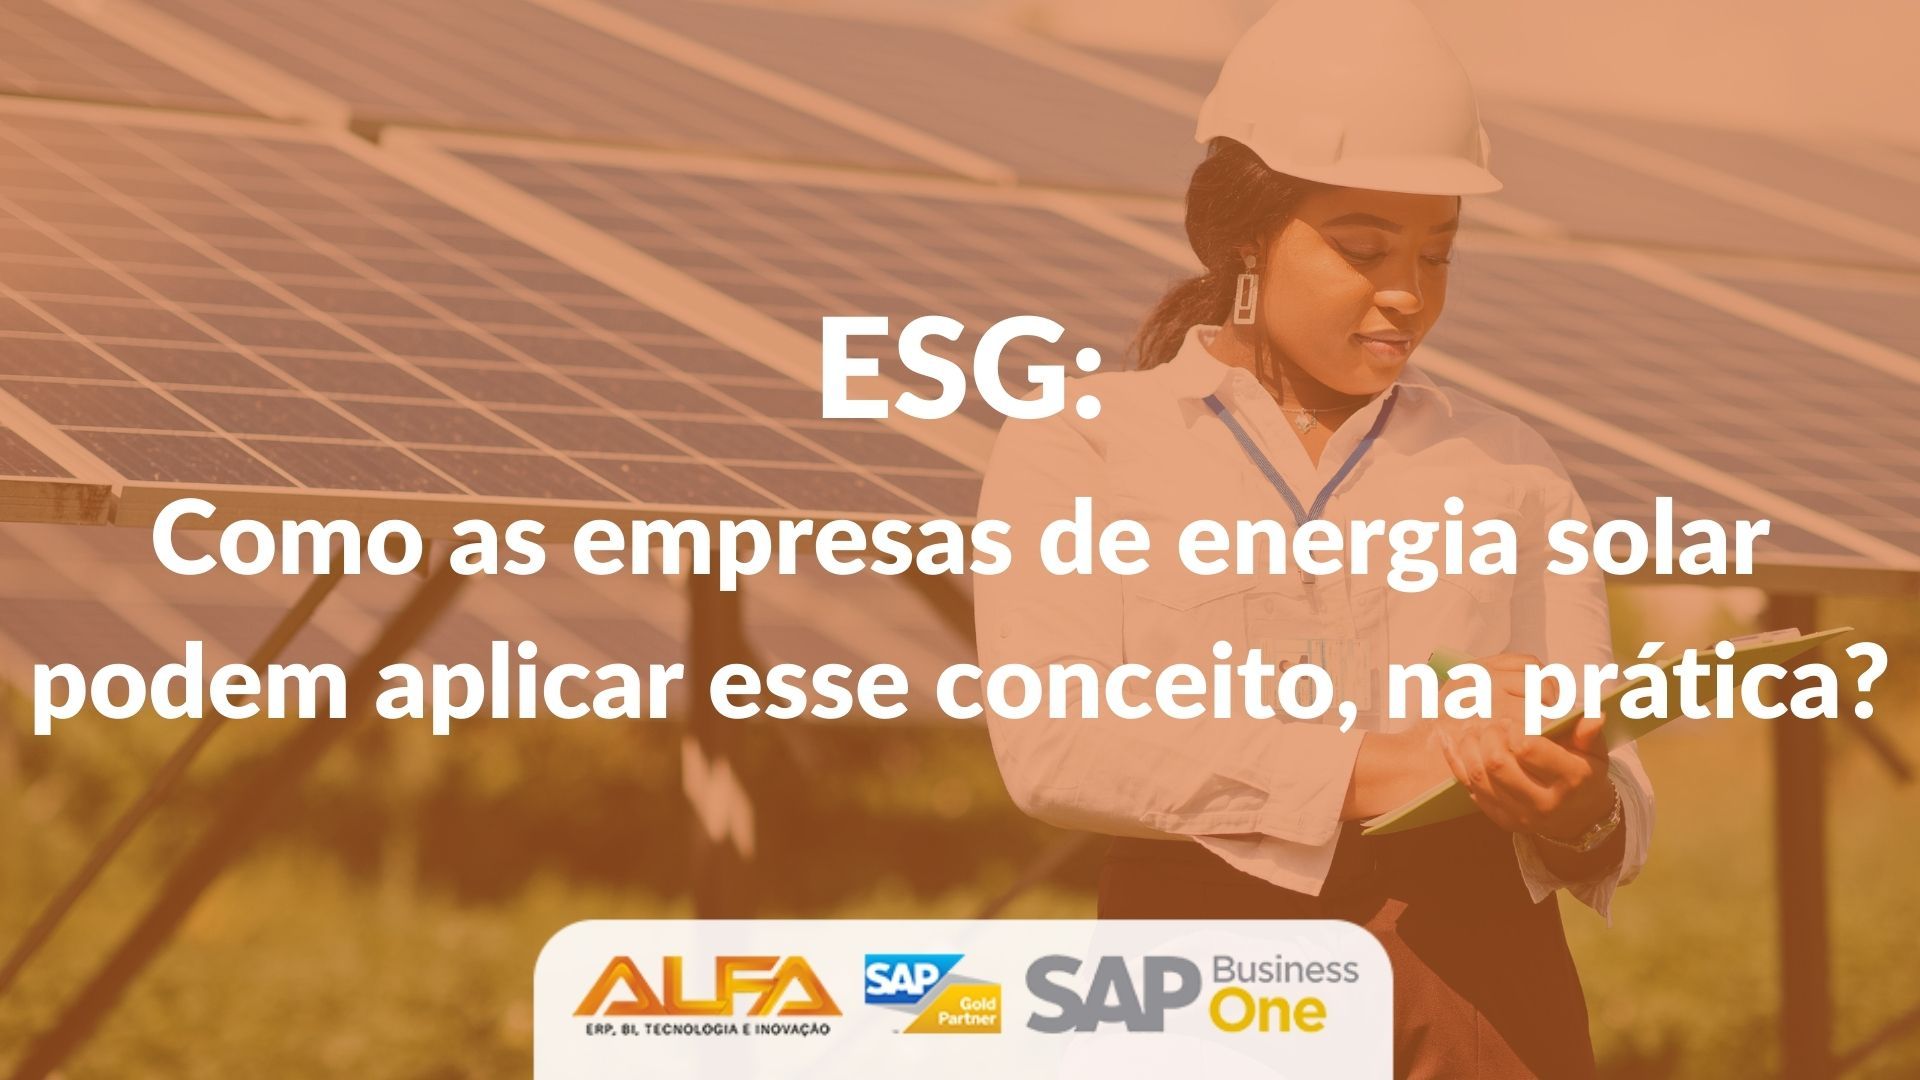 ESG: como as empresas de energia solar podem aplicar esse conceito, na prática? ESG: como as empresas de energia solar podem aplicar esse conceito, na prática?